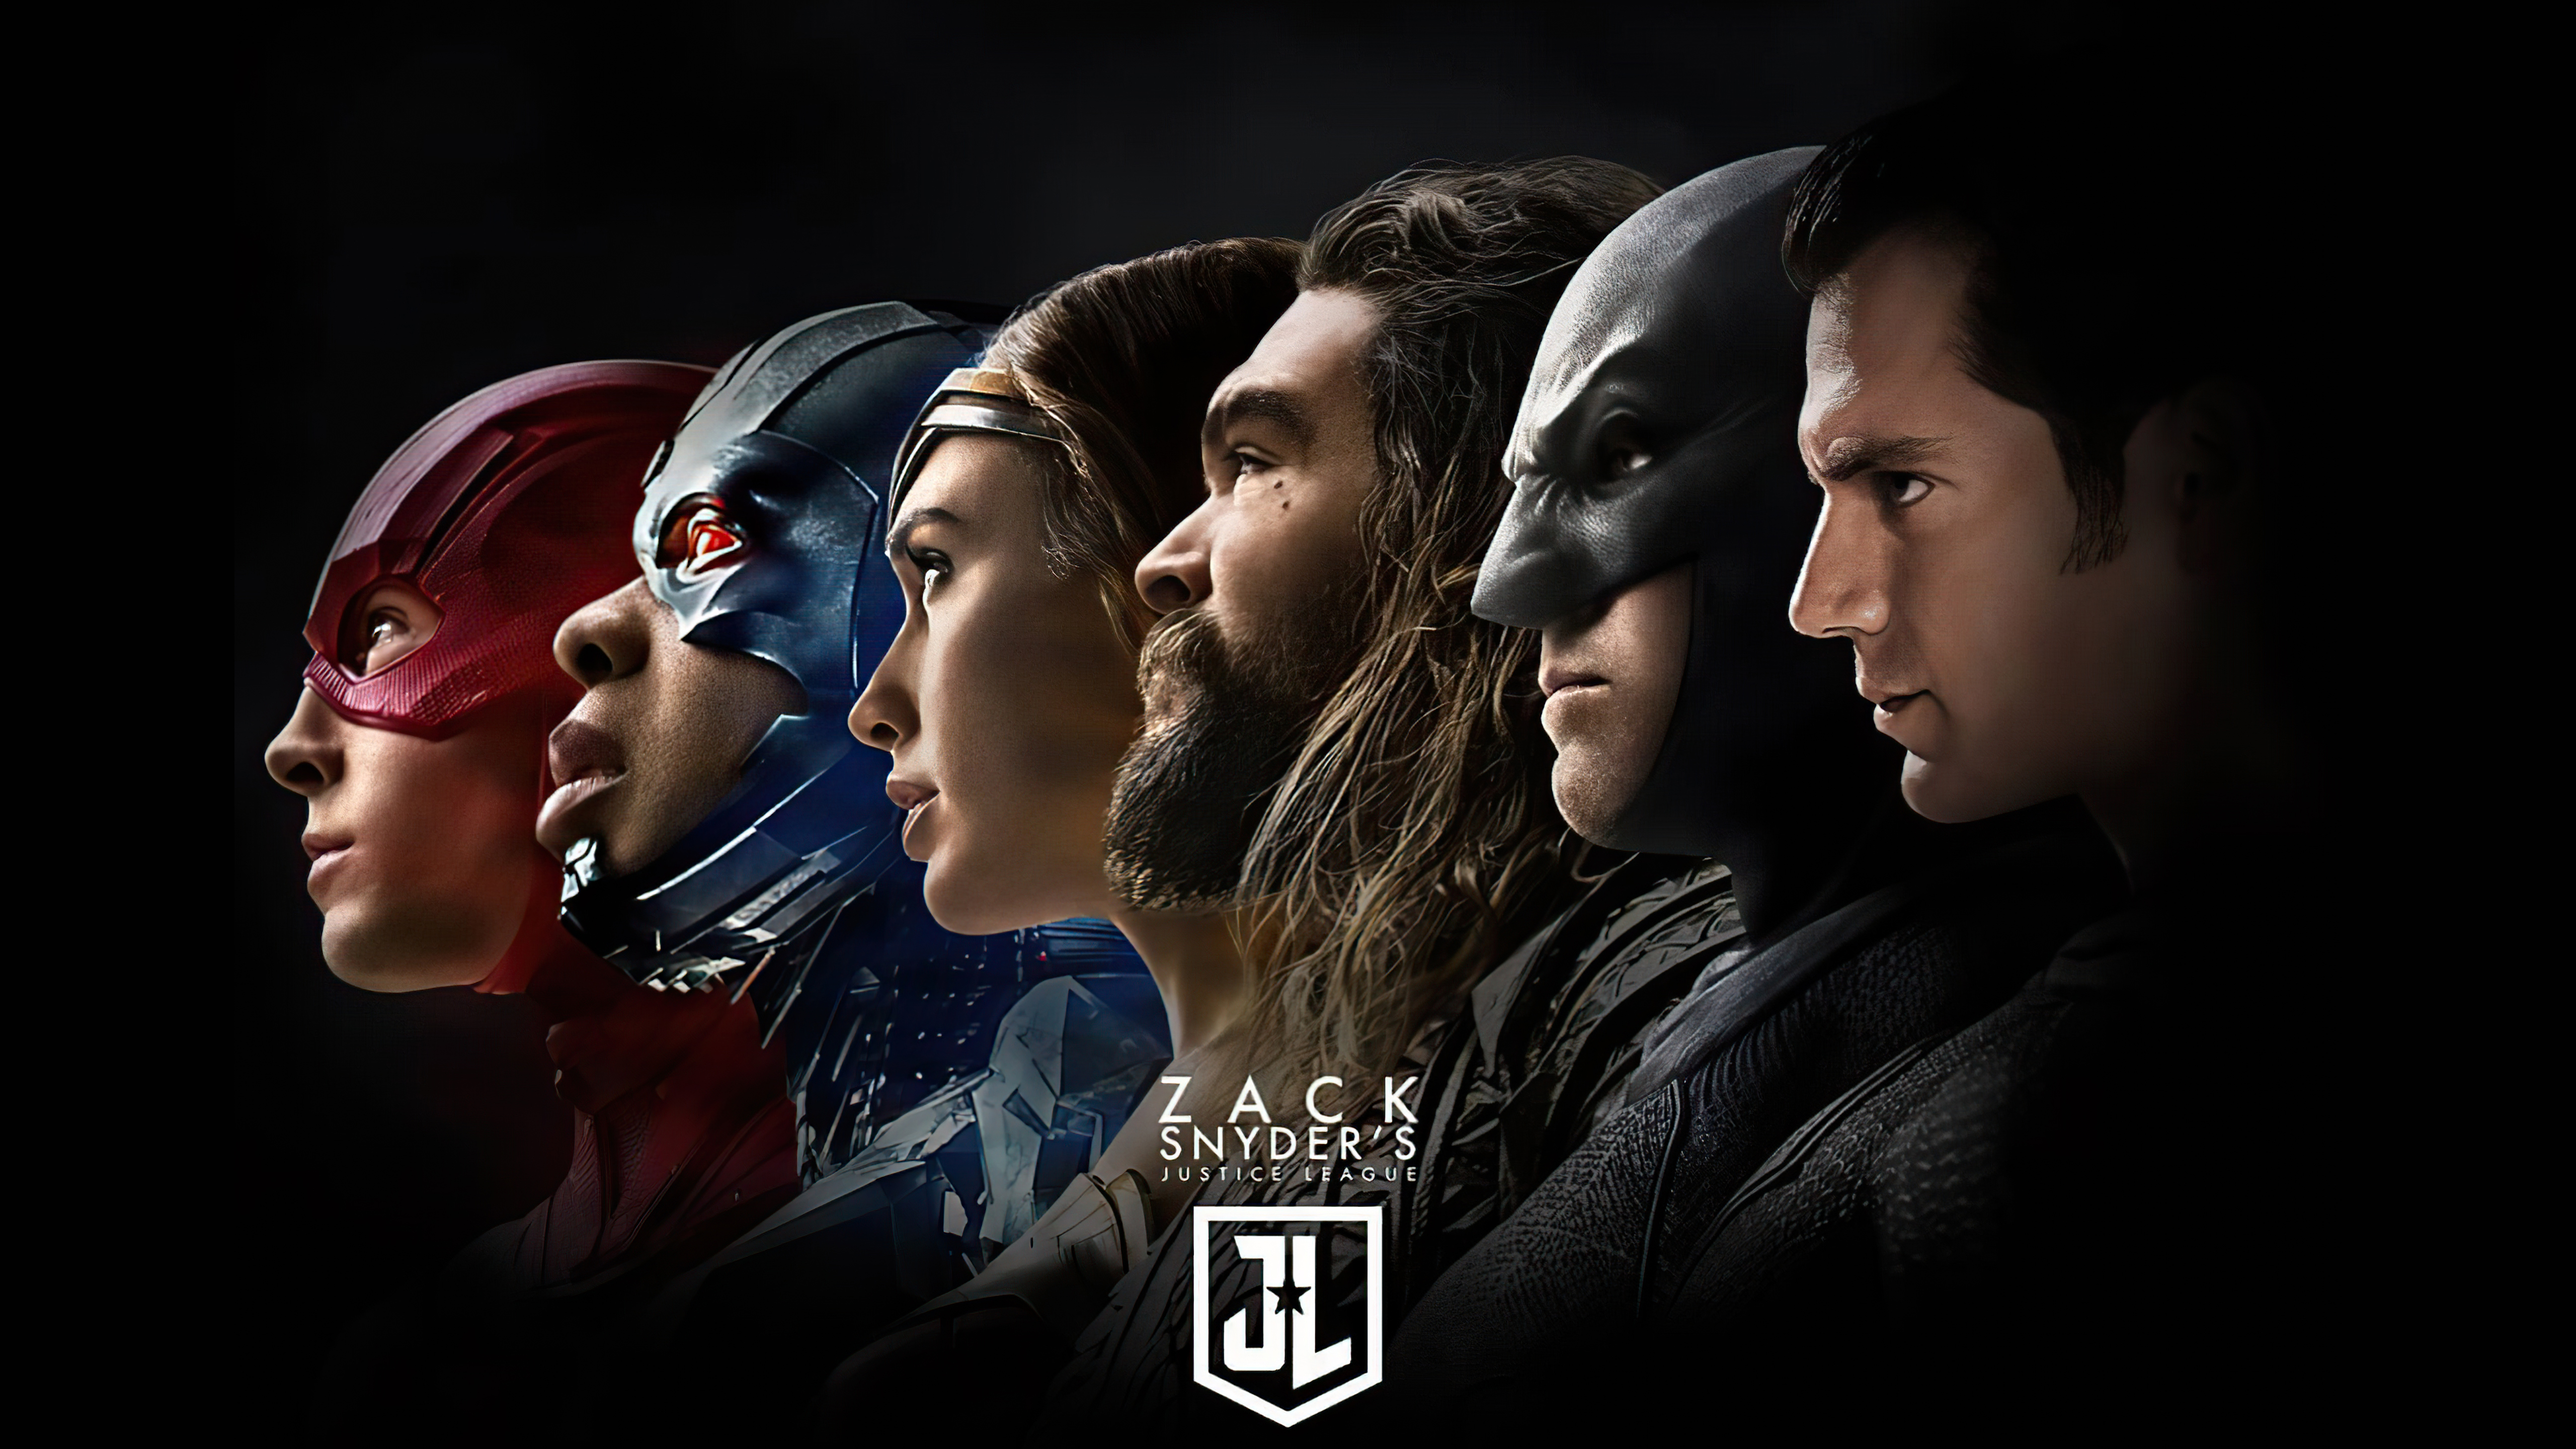 zack snyder's justice league, movie, aquaman, batman, cyborg (dc comics), flash, justice league, superman, wonder woman